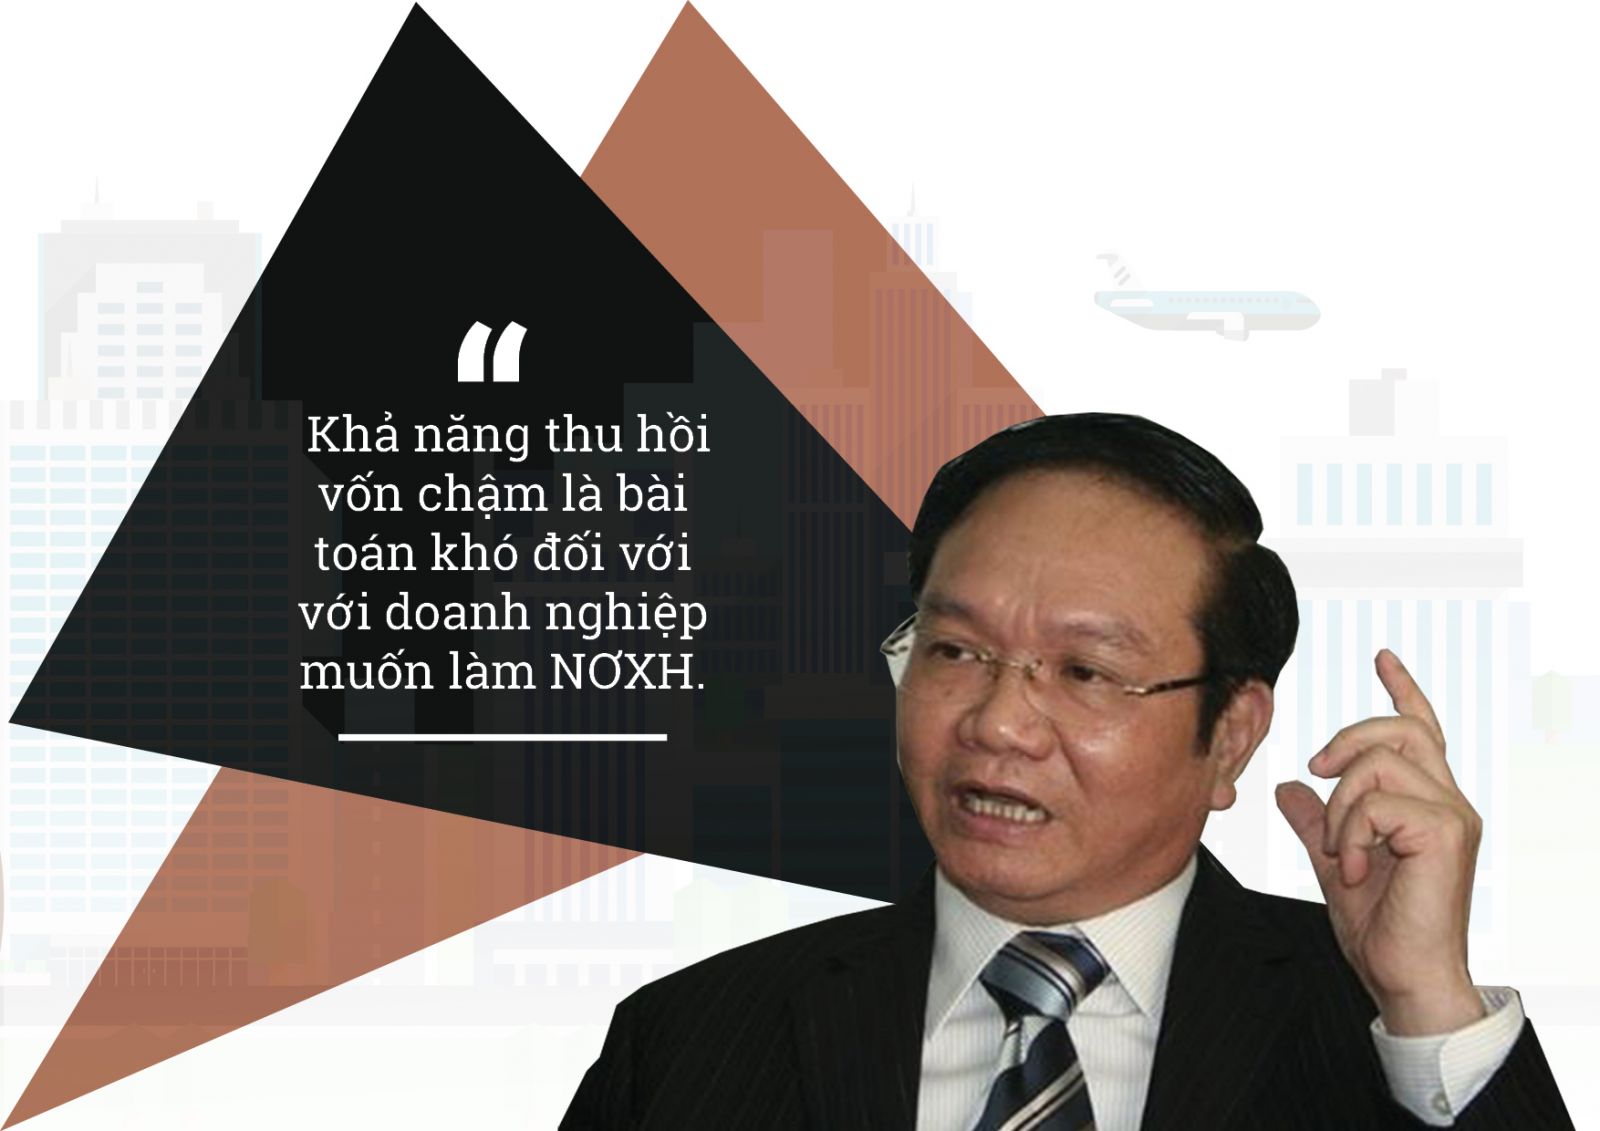 Ông Nguyễn Ngọc Thành - Phó chủ tịch Hiệp hội Bất động sản Việt Nam